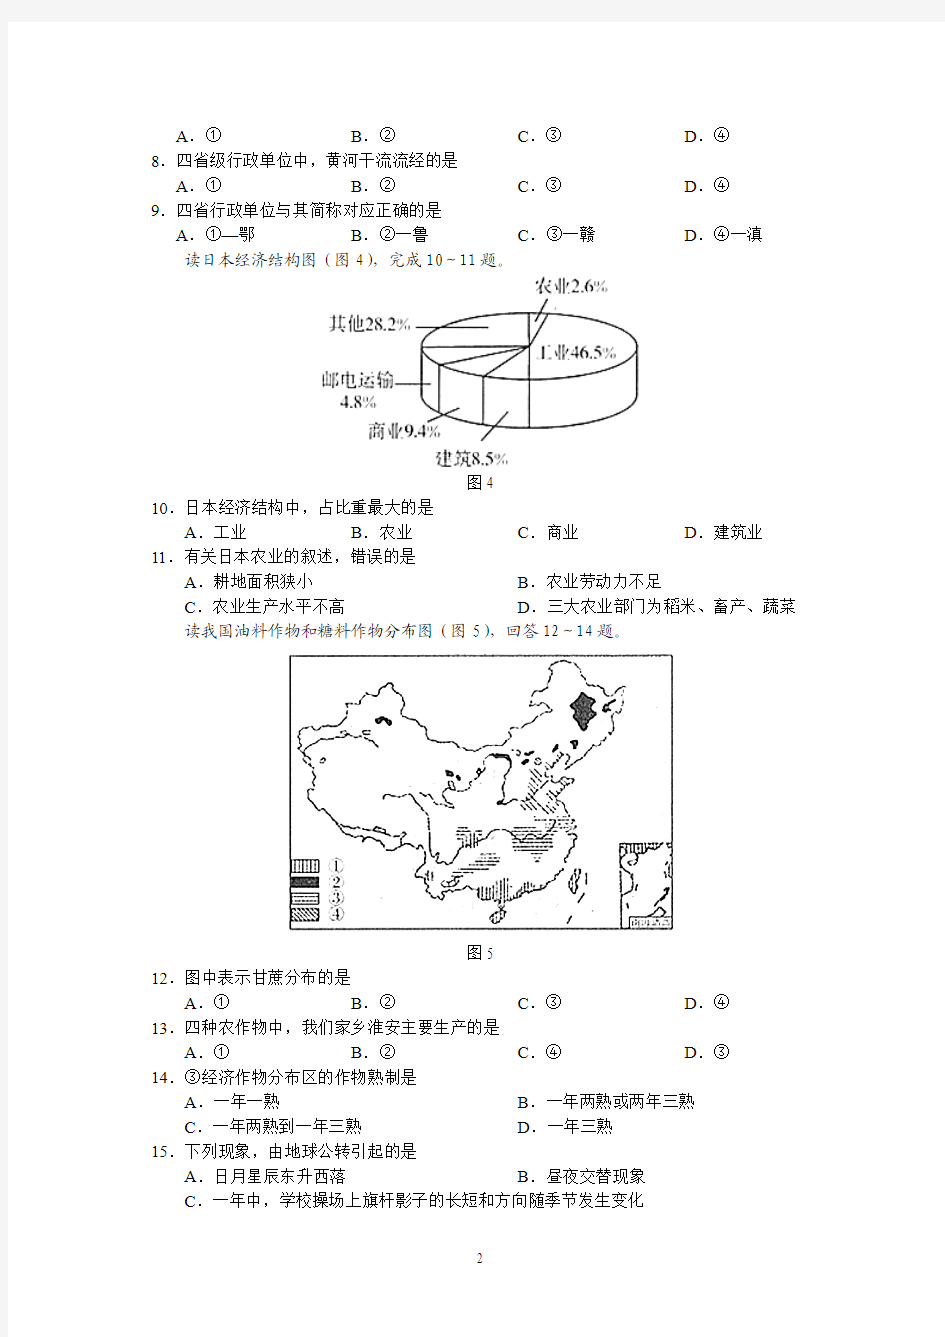 2013年湛江市中考地理模拟试题(二)